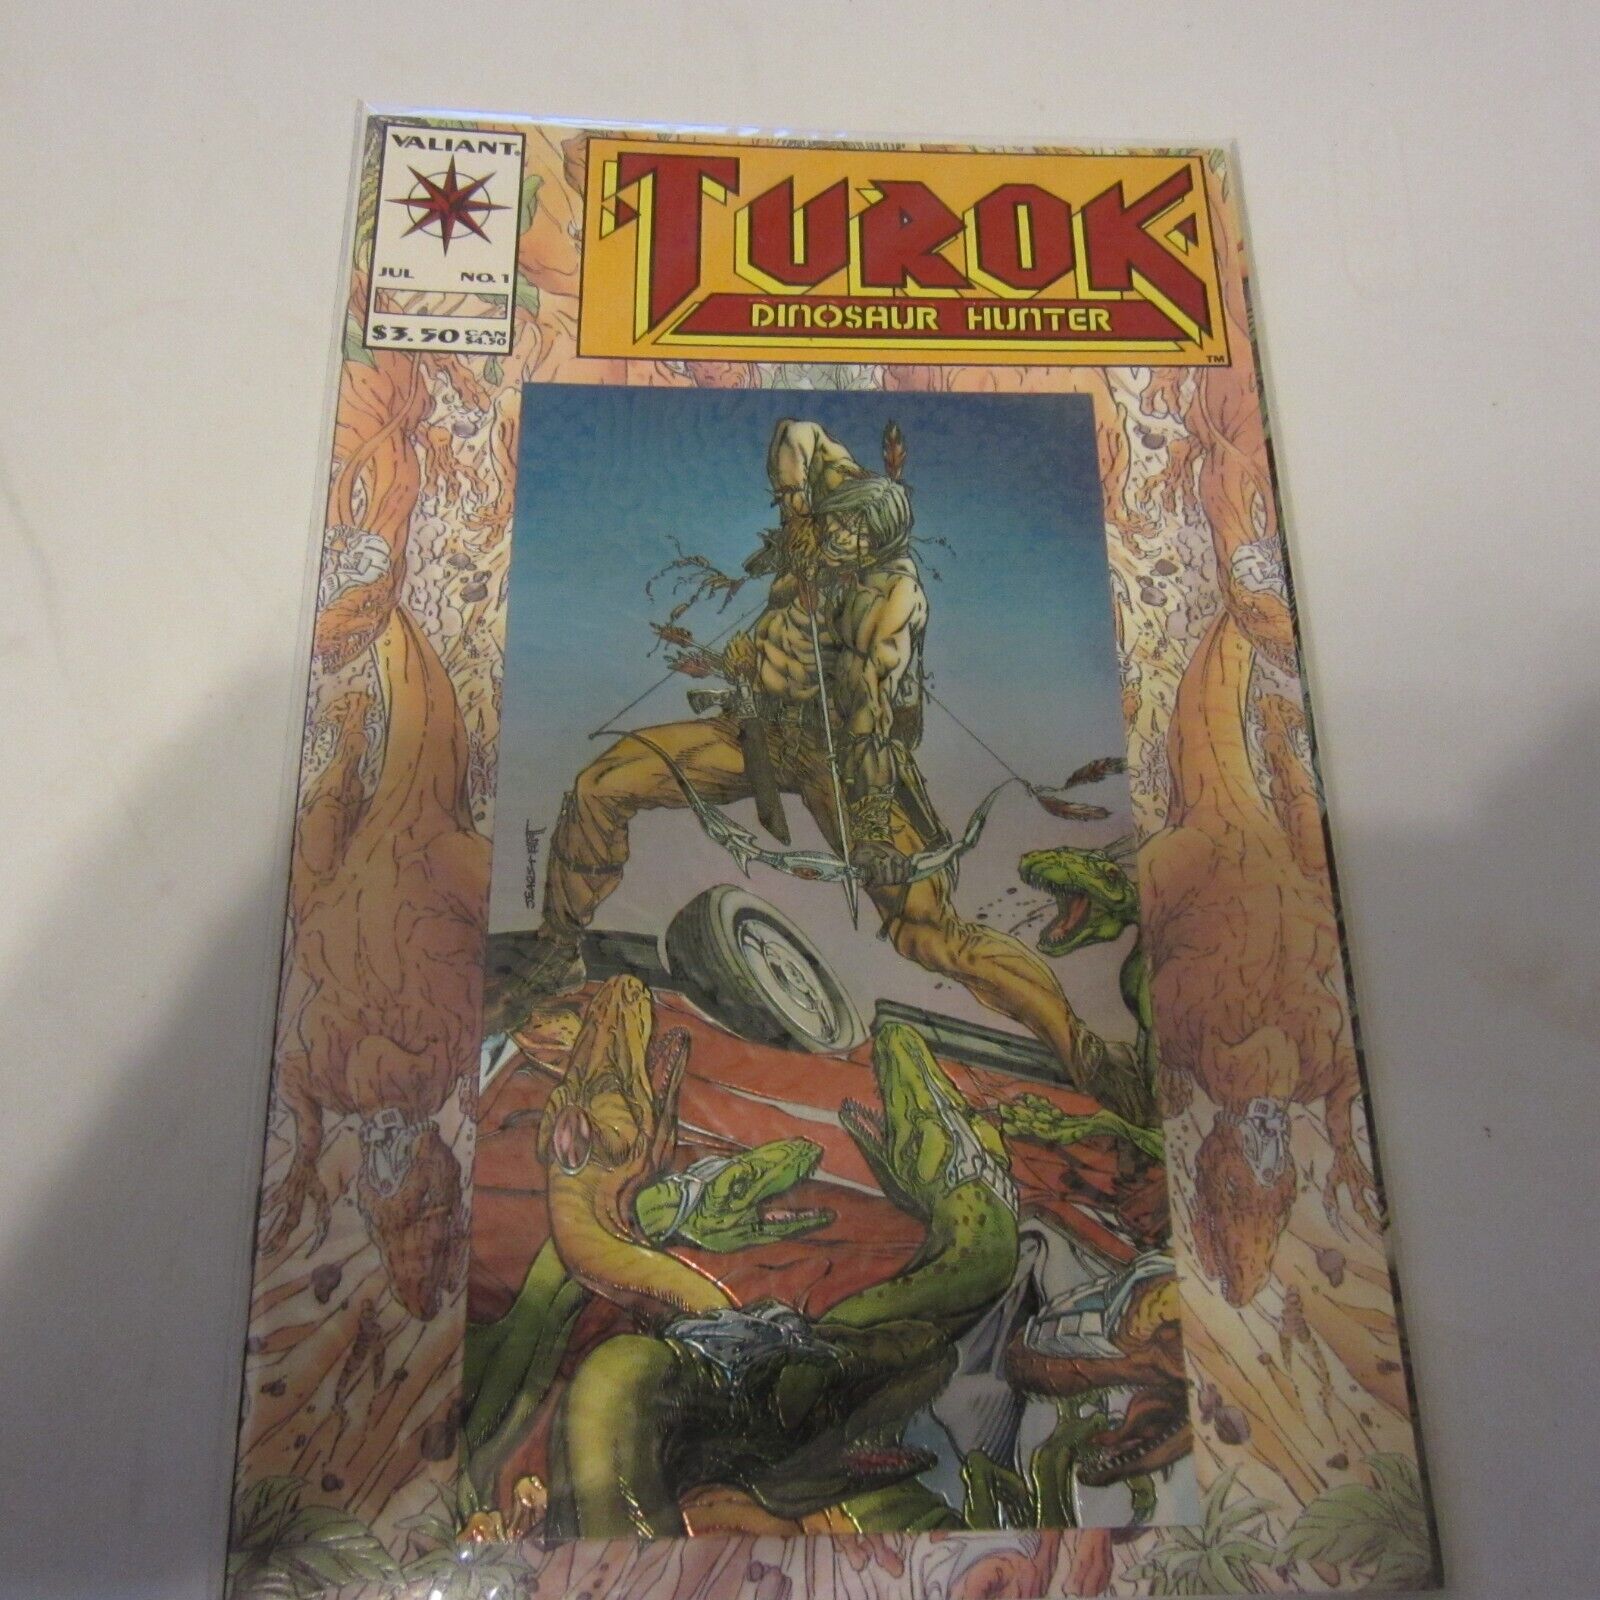 Valiant Comics Turok Dinosaur Hunter #1  Embossed Foil & Chromium Cover baged